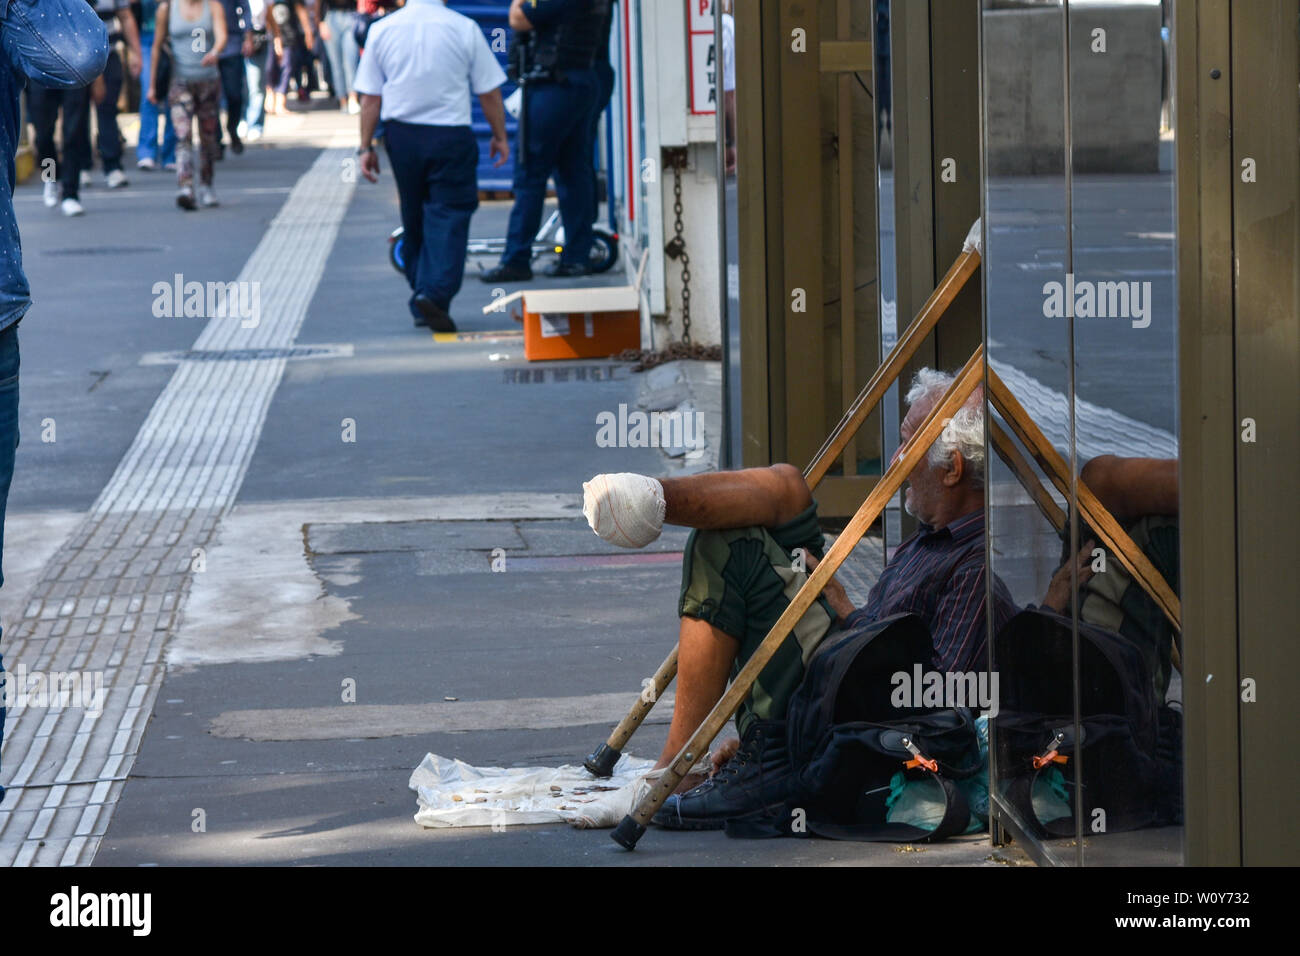 SÃO PAULO, SP - 28.06.2019: PESSOAS EM SITUAÇÃO DE RUA - Menschen, die in extremer Armut leben, in einer Strasse Lage in São Paulo, an diesem Freitag (28). (Foto: Roberto Casimiro/Fotoarena) Stockfoto